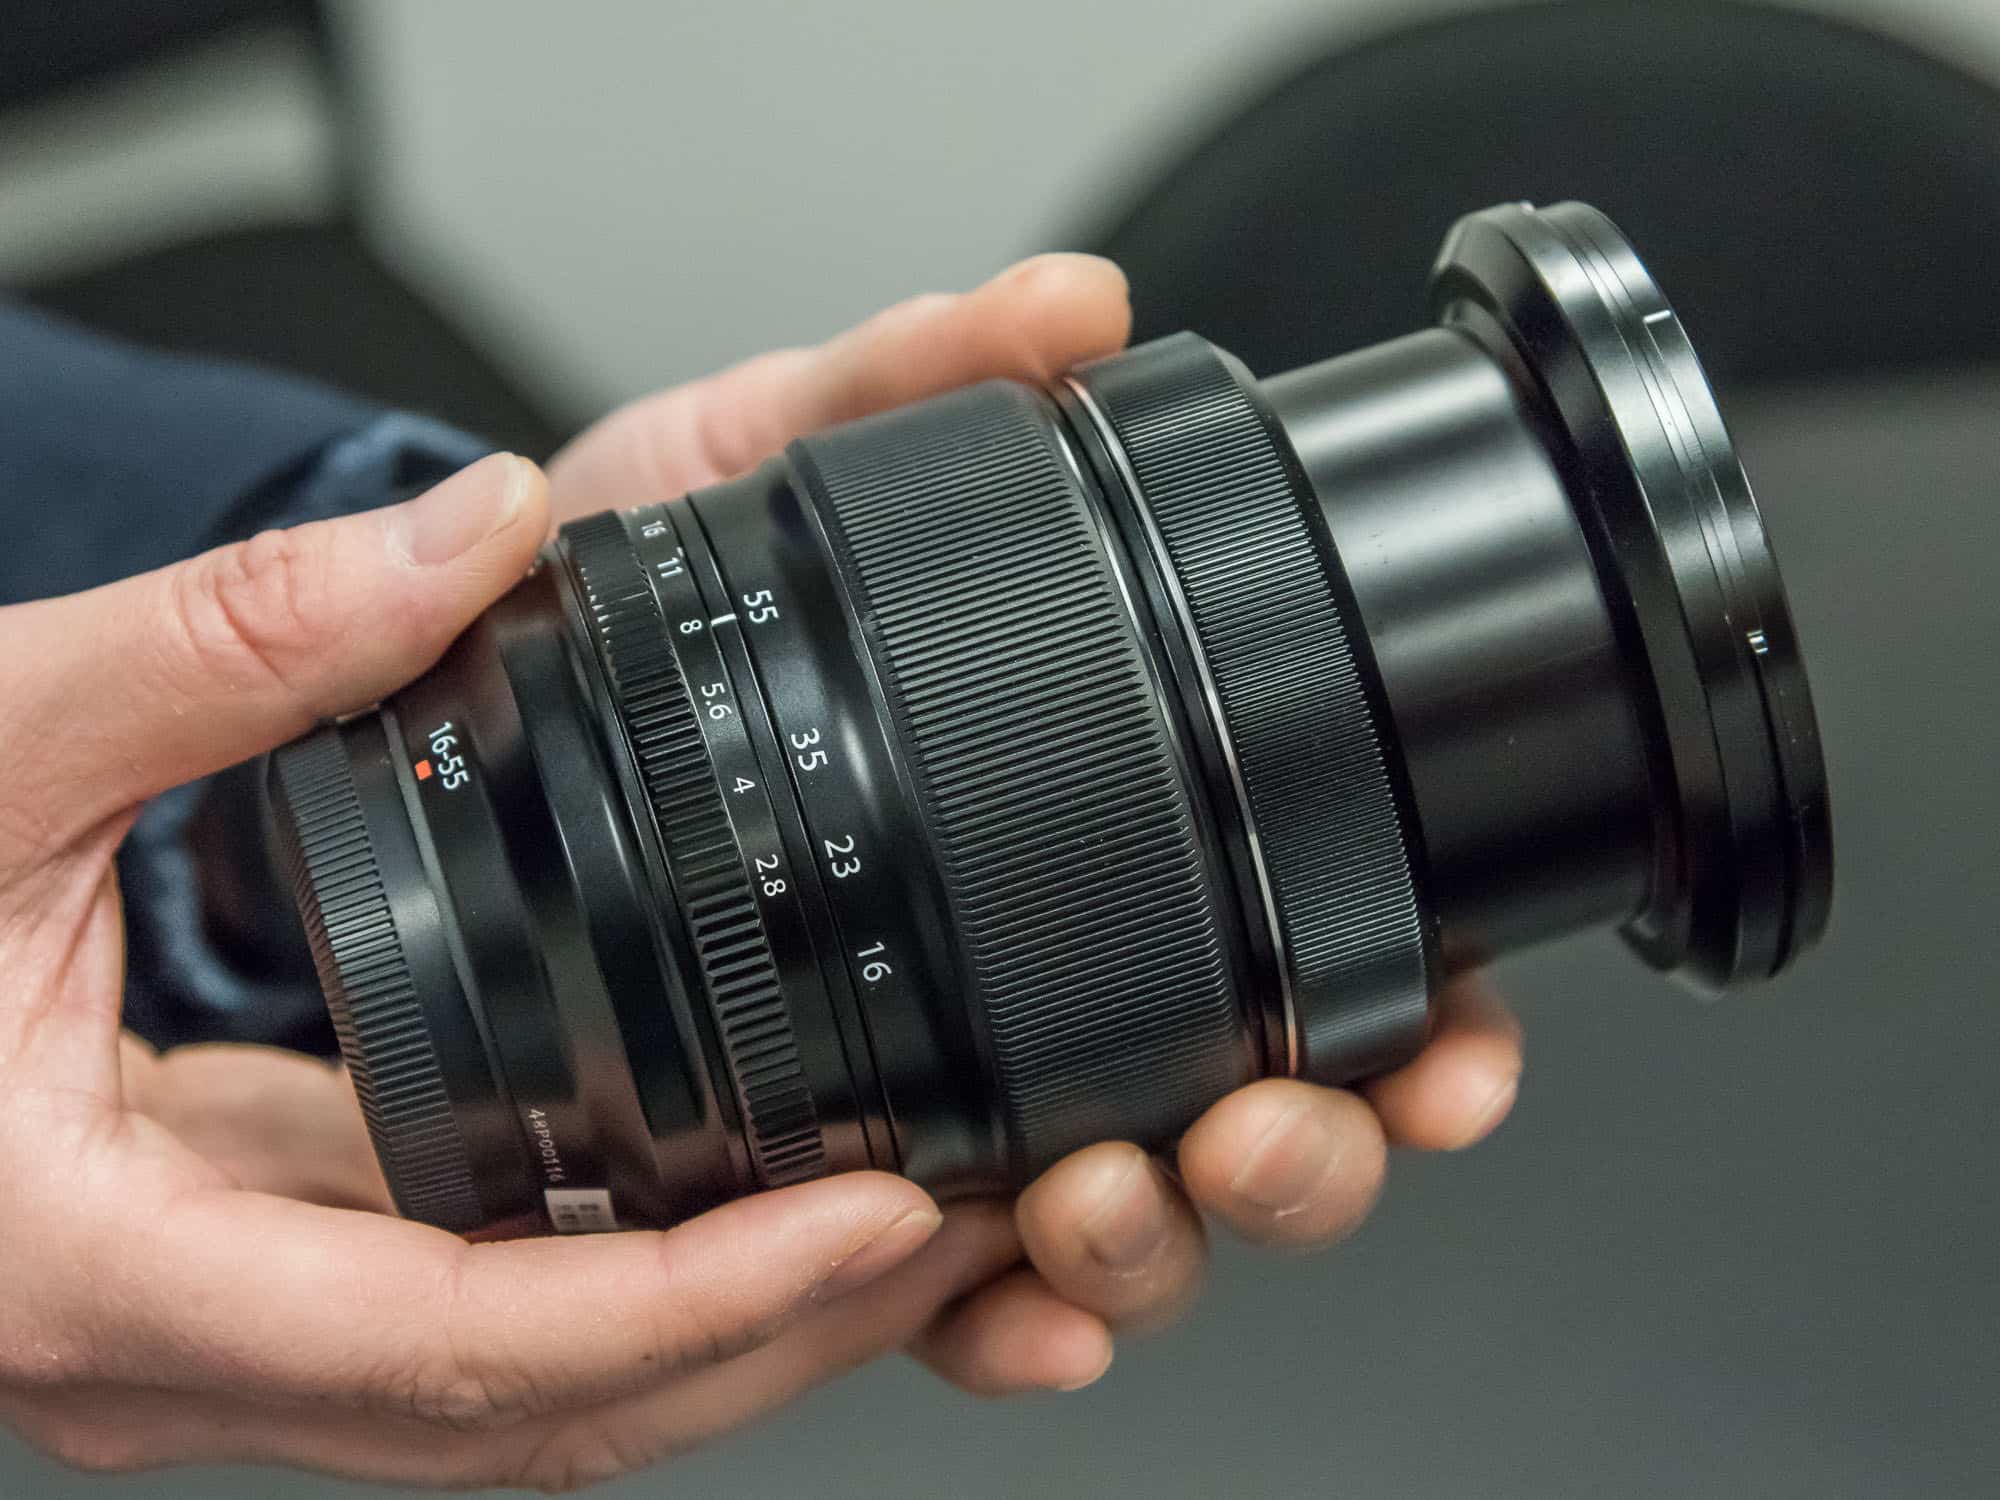 Ống kính Fujifilm XF 16-55mm F2.8 R LM trên tay người dùng